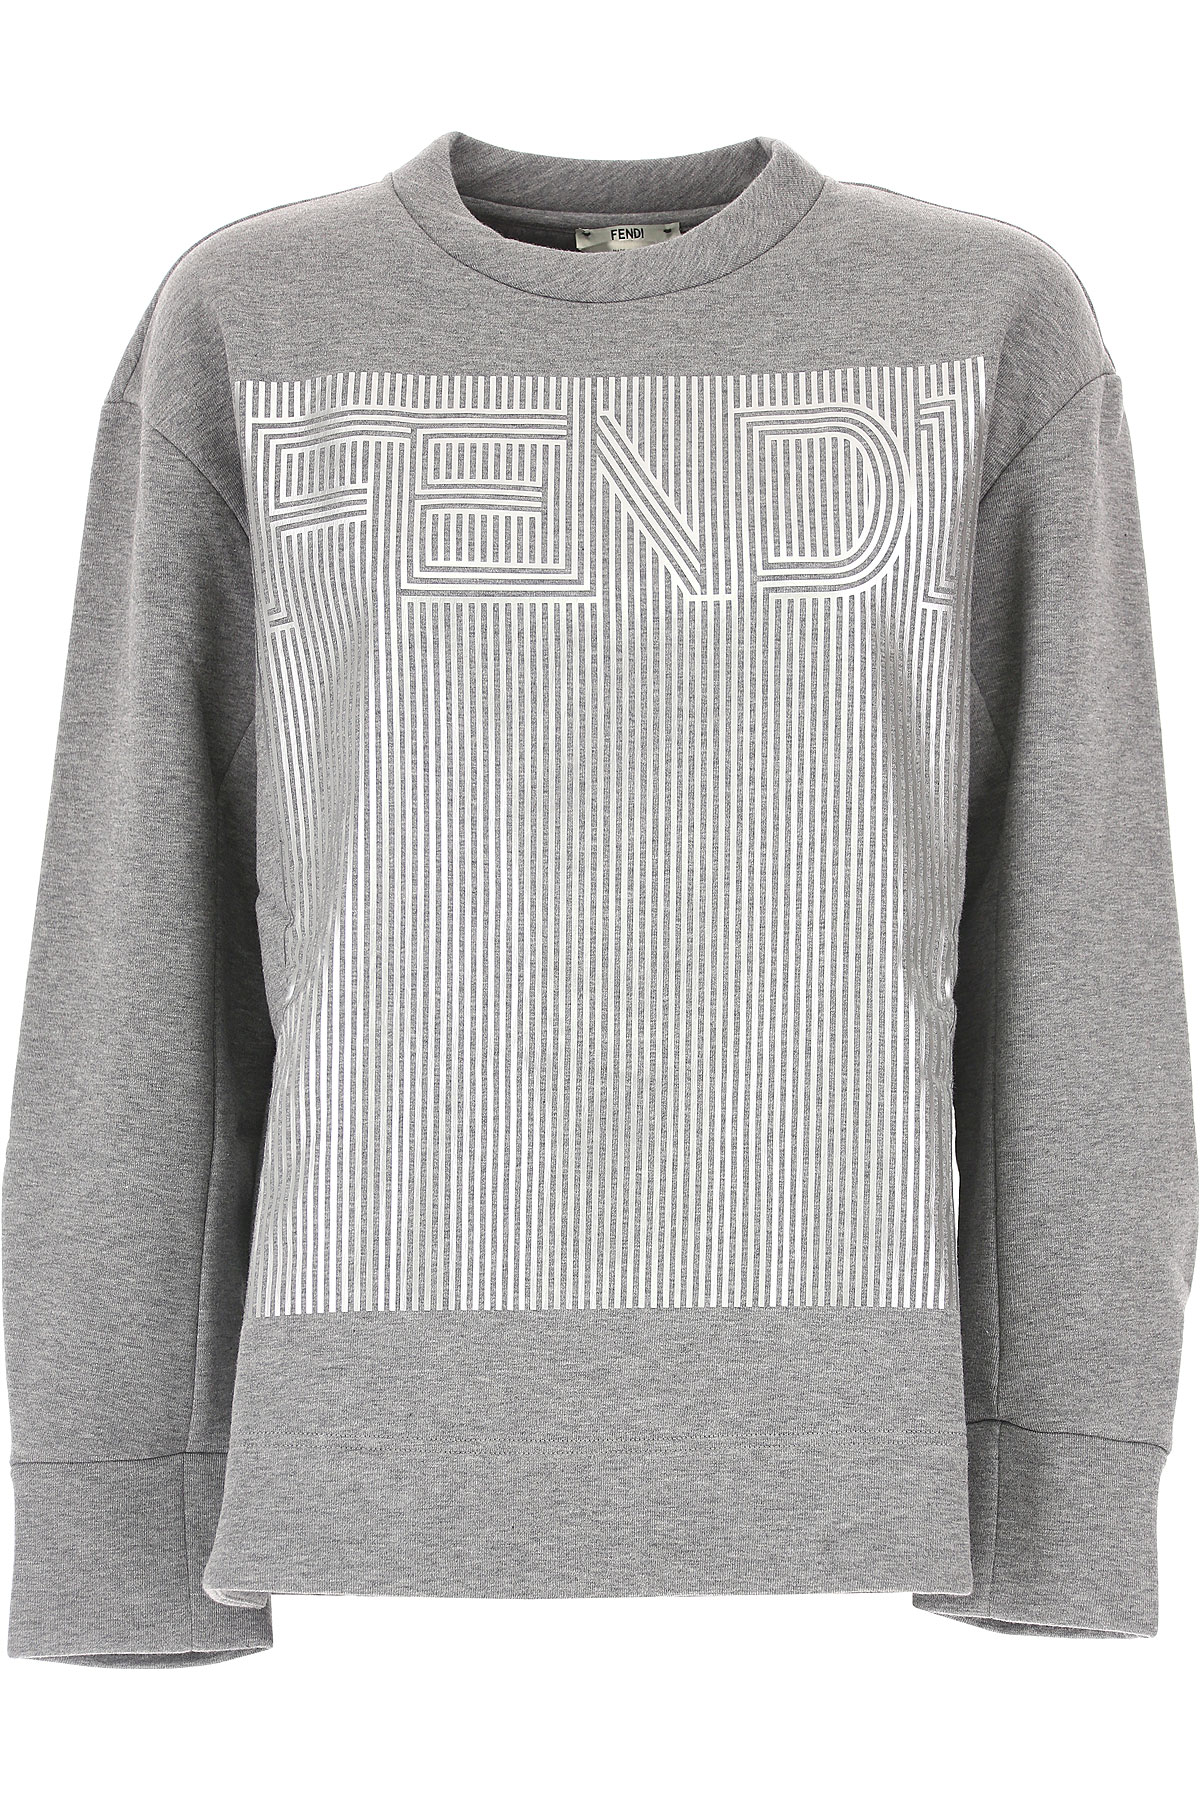 Fendi Sweatshirt for Women , Gris clair, Coton, 2017, 38 40